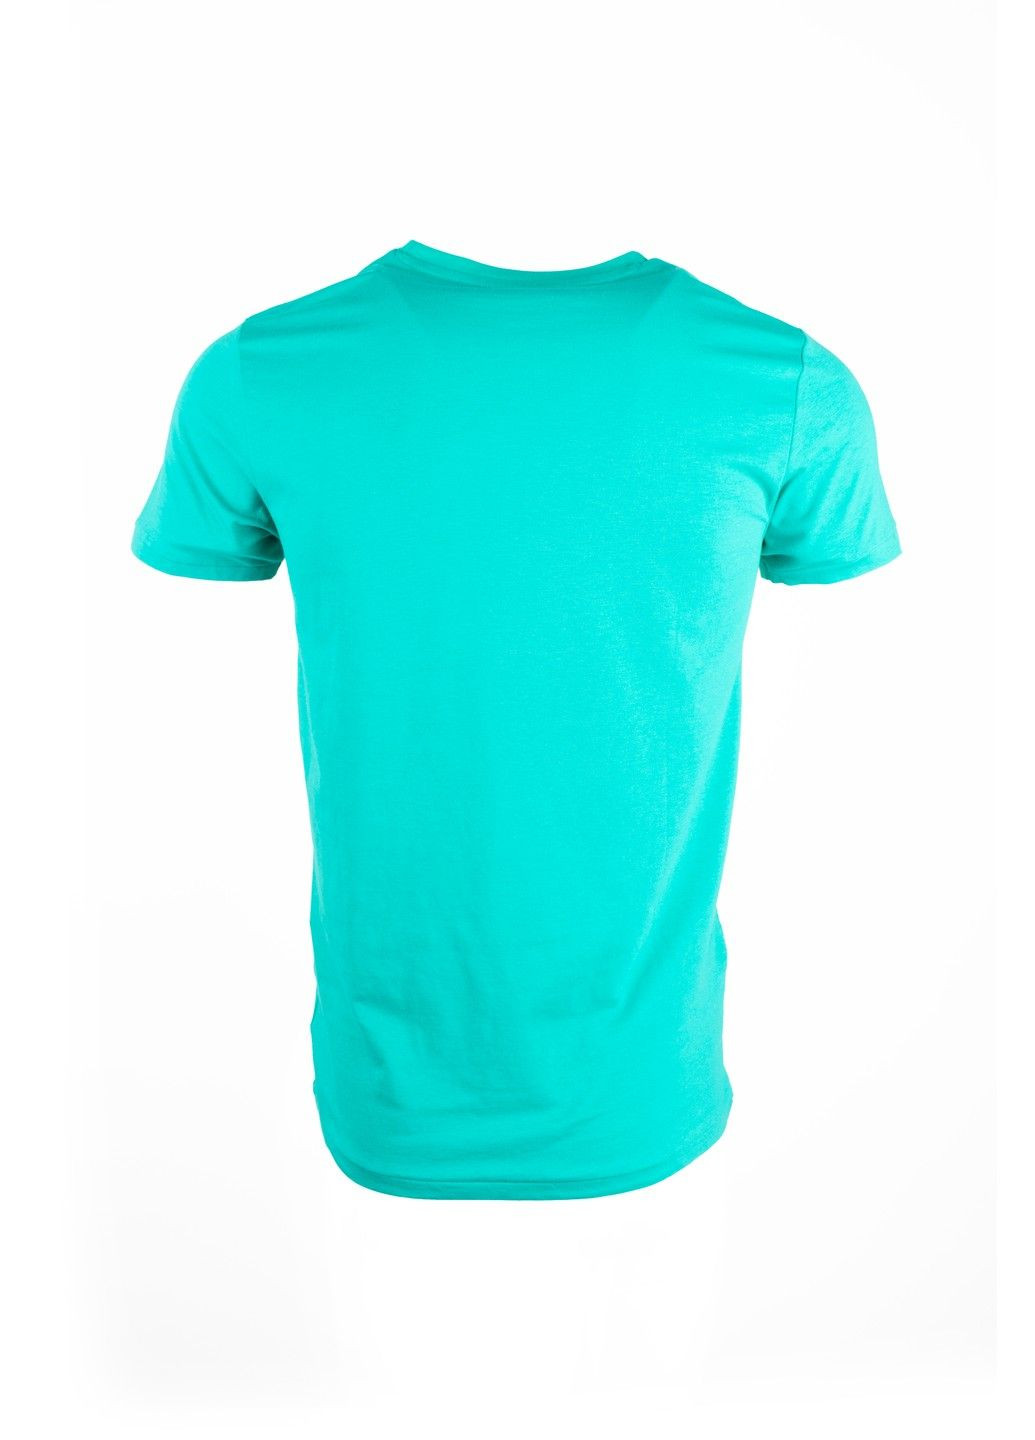 Бирюзовая футболка мужская top look бирюзовая 070821-001542 No Brand